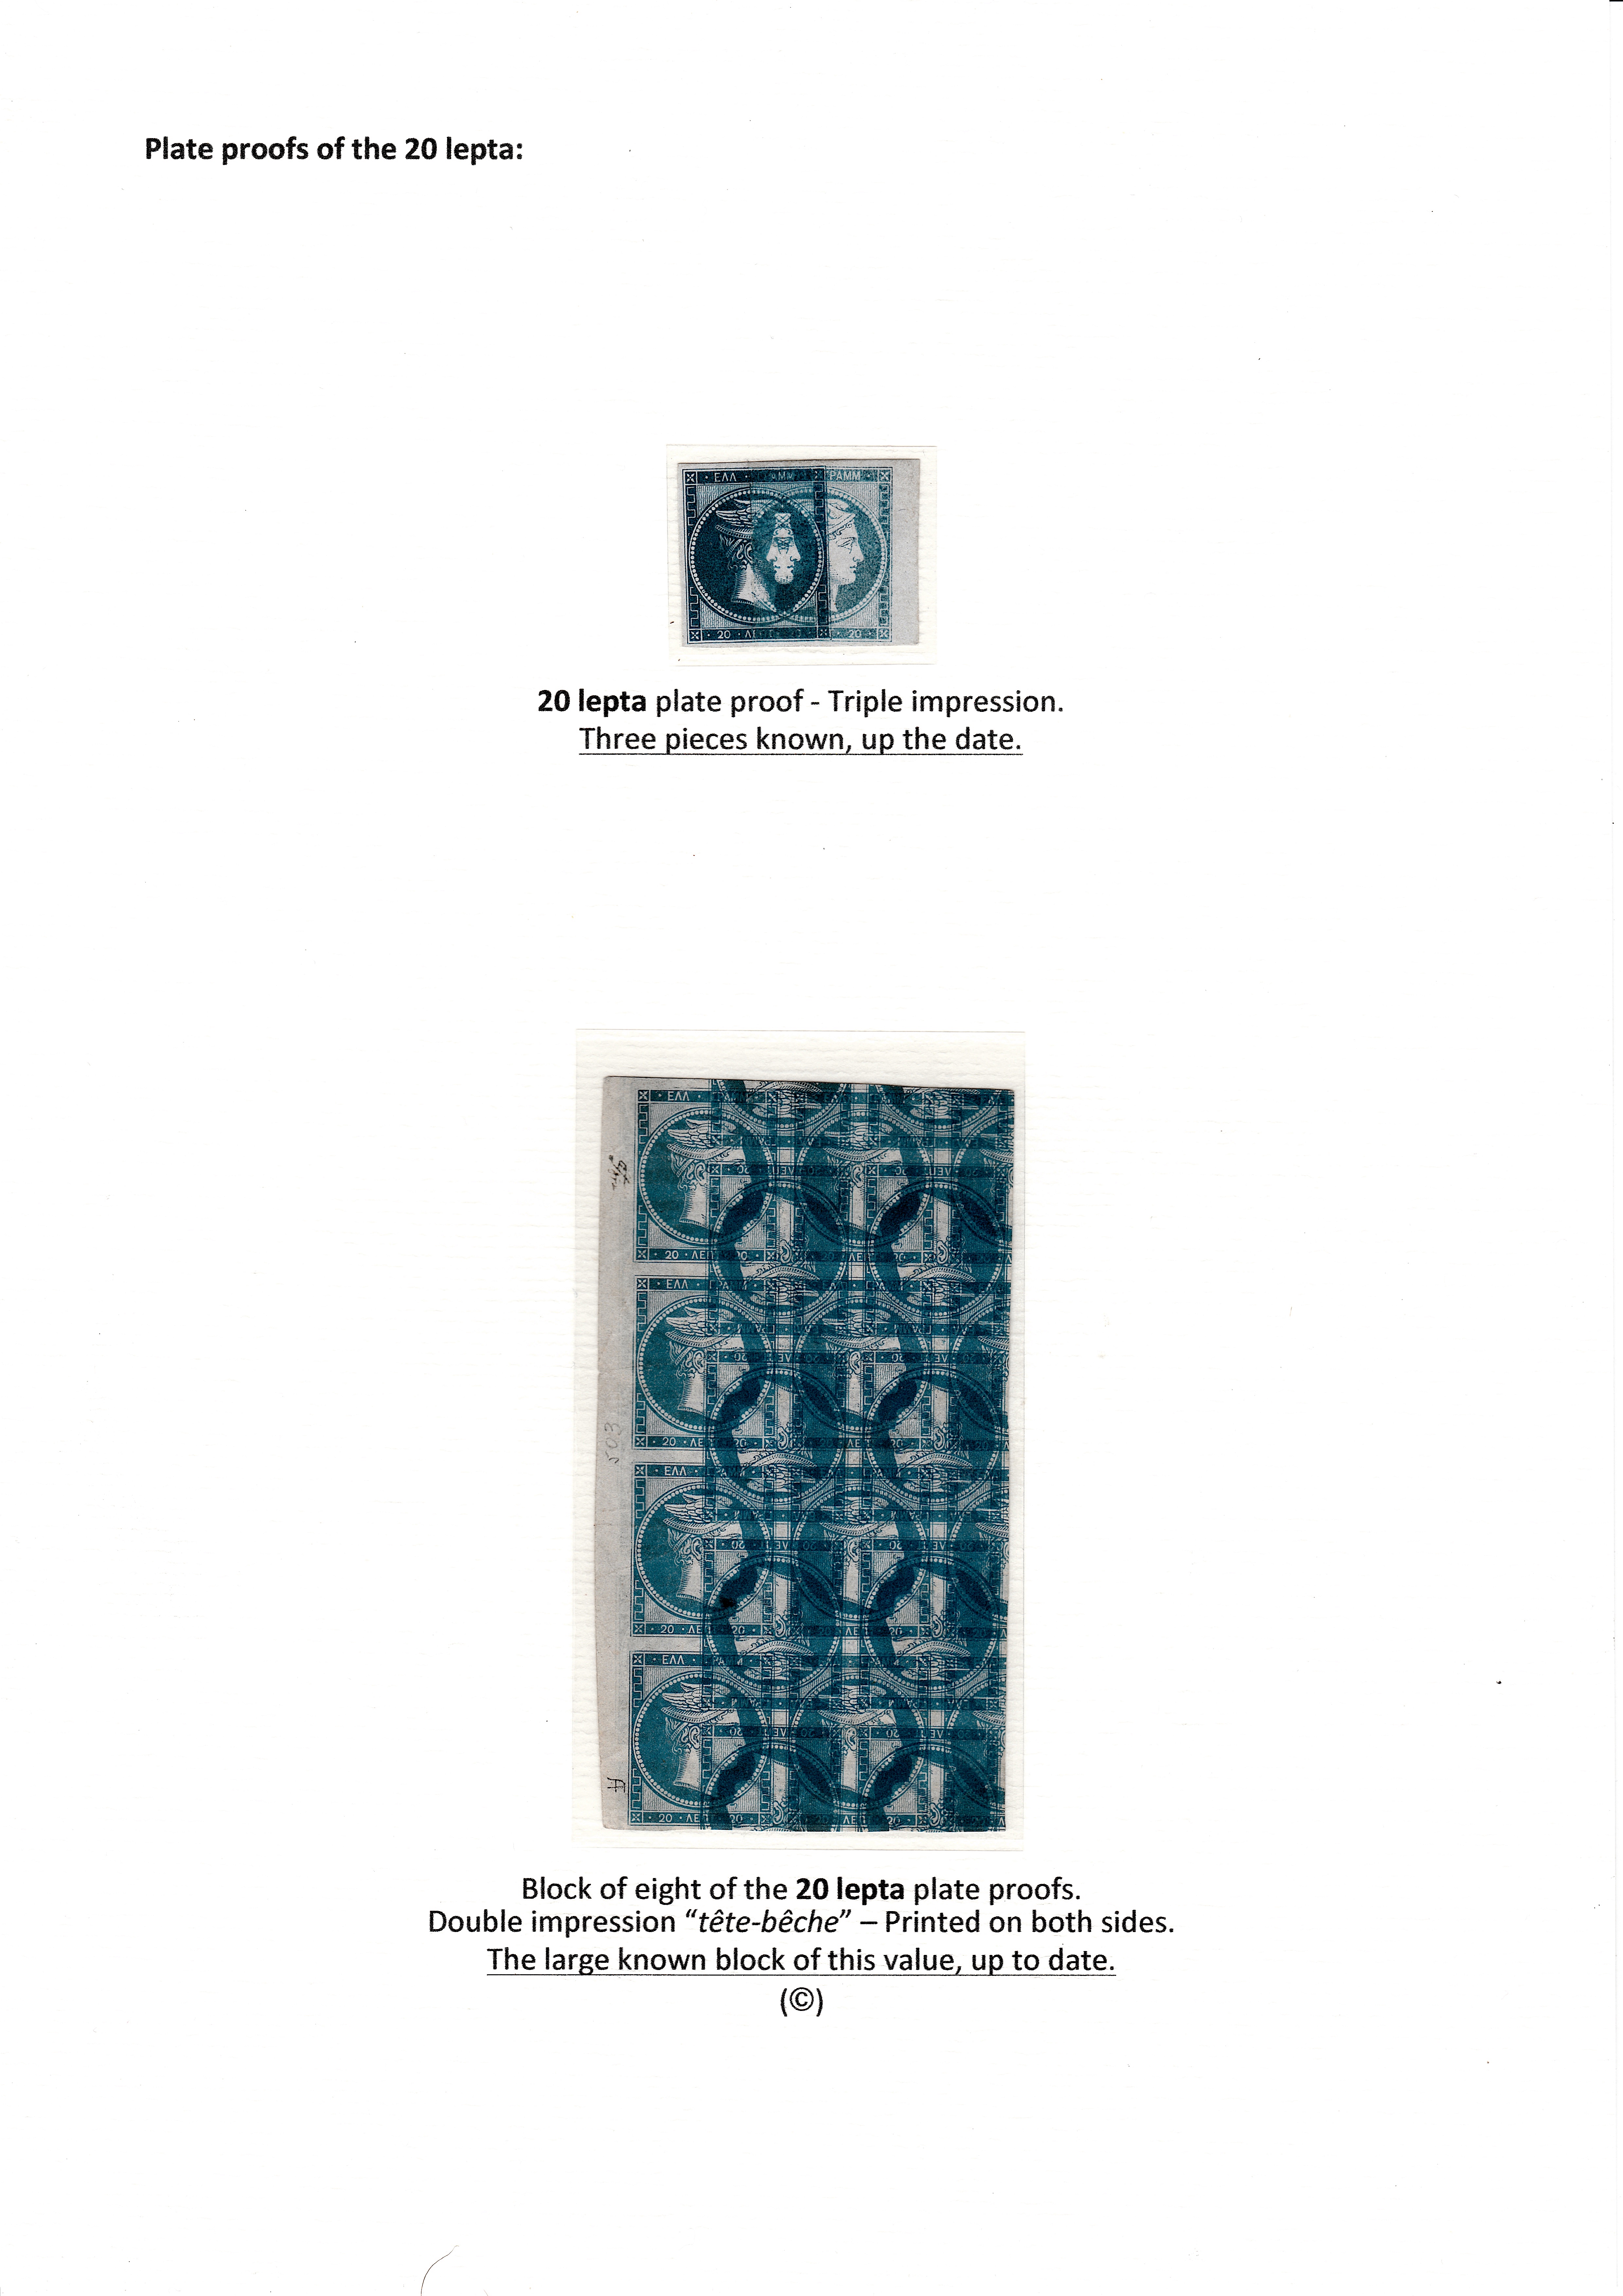 La fabrication et l���utilisation postale des tirages de Paris de la grosse t��te d���Herm��s de Gr��ce��� p. 14